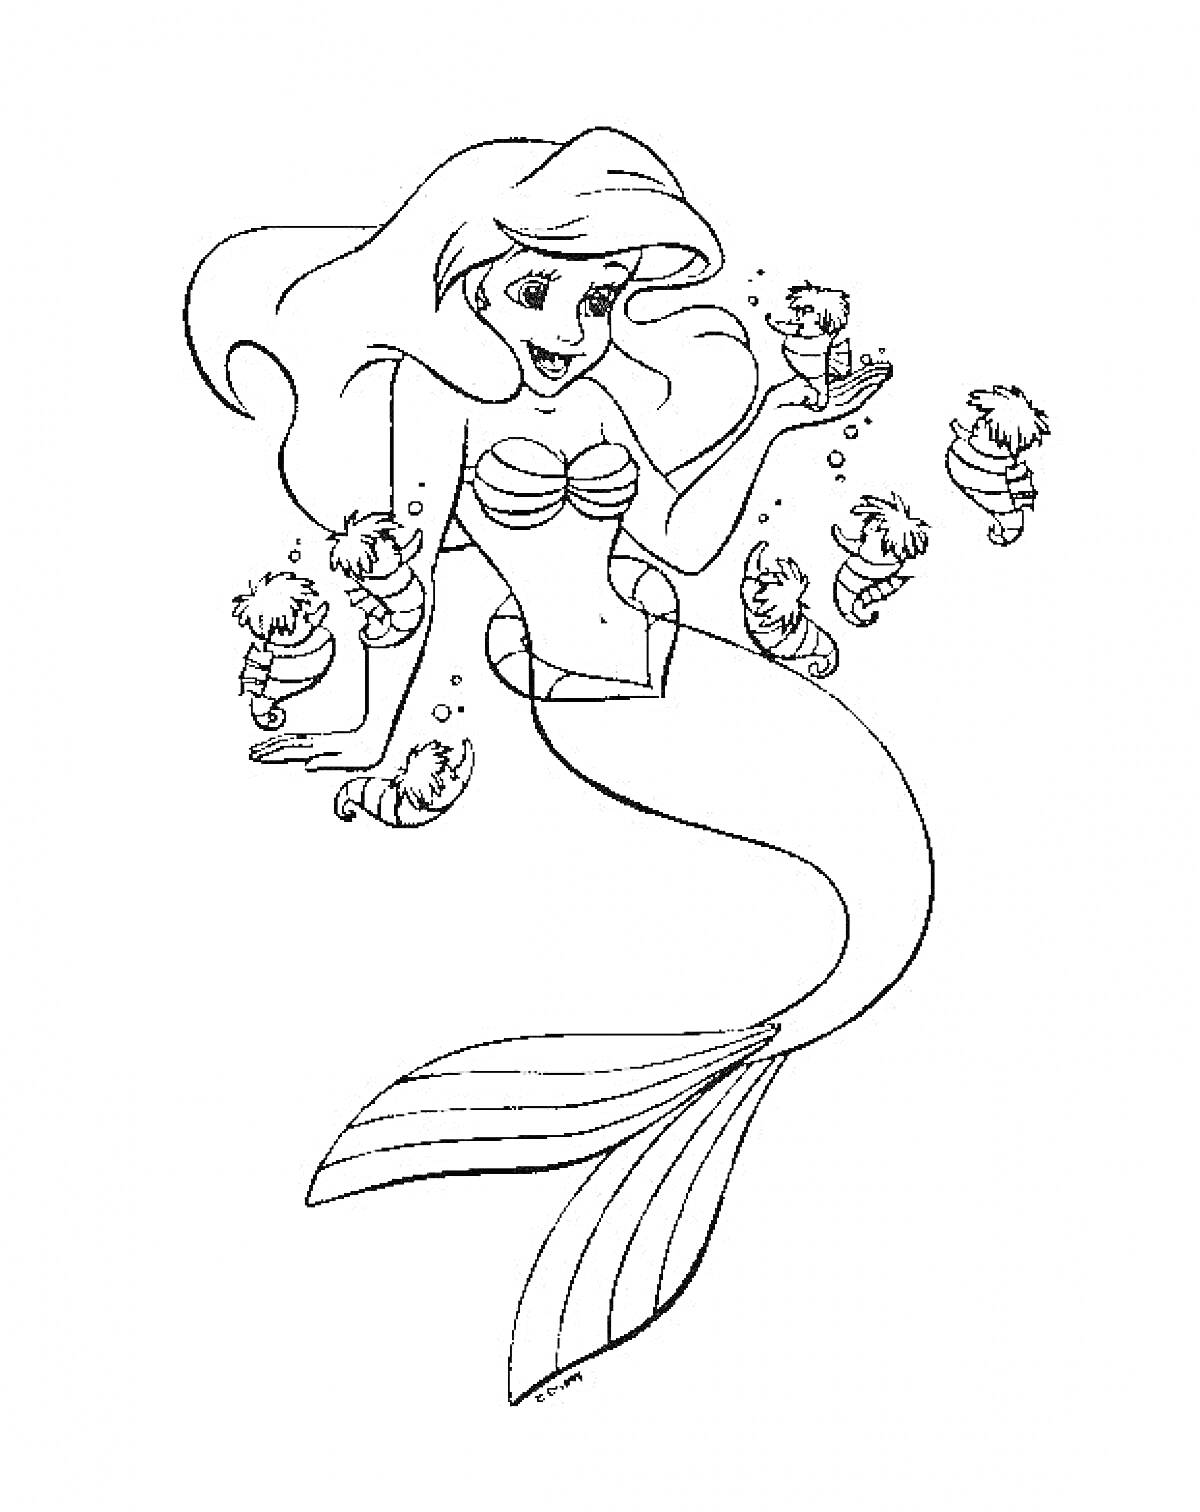 Раскраска Русалка Ариэль с морскими коньками: Ариэль с длинными волосами, в ракушках, шесть морских коньков